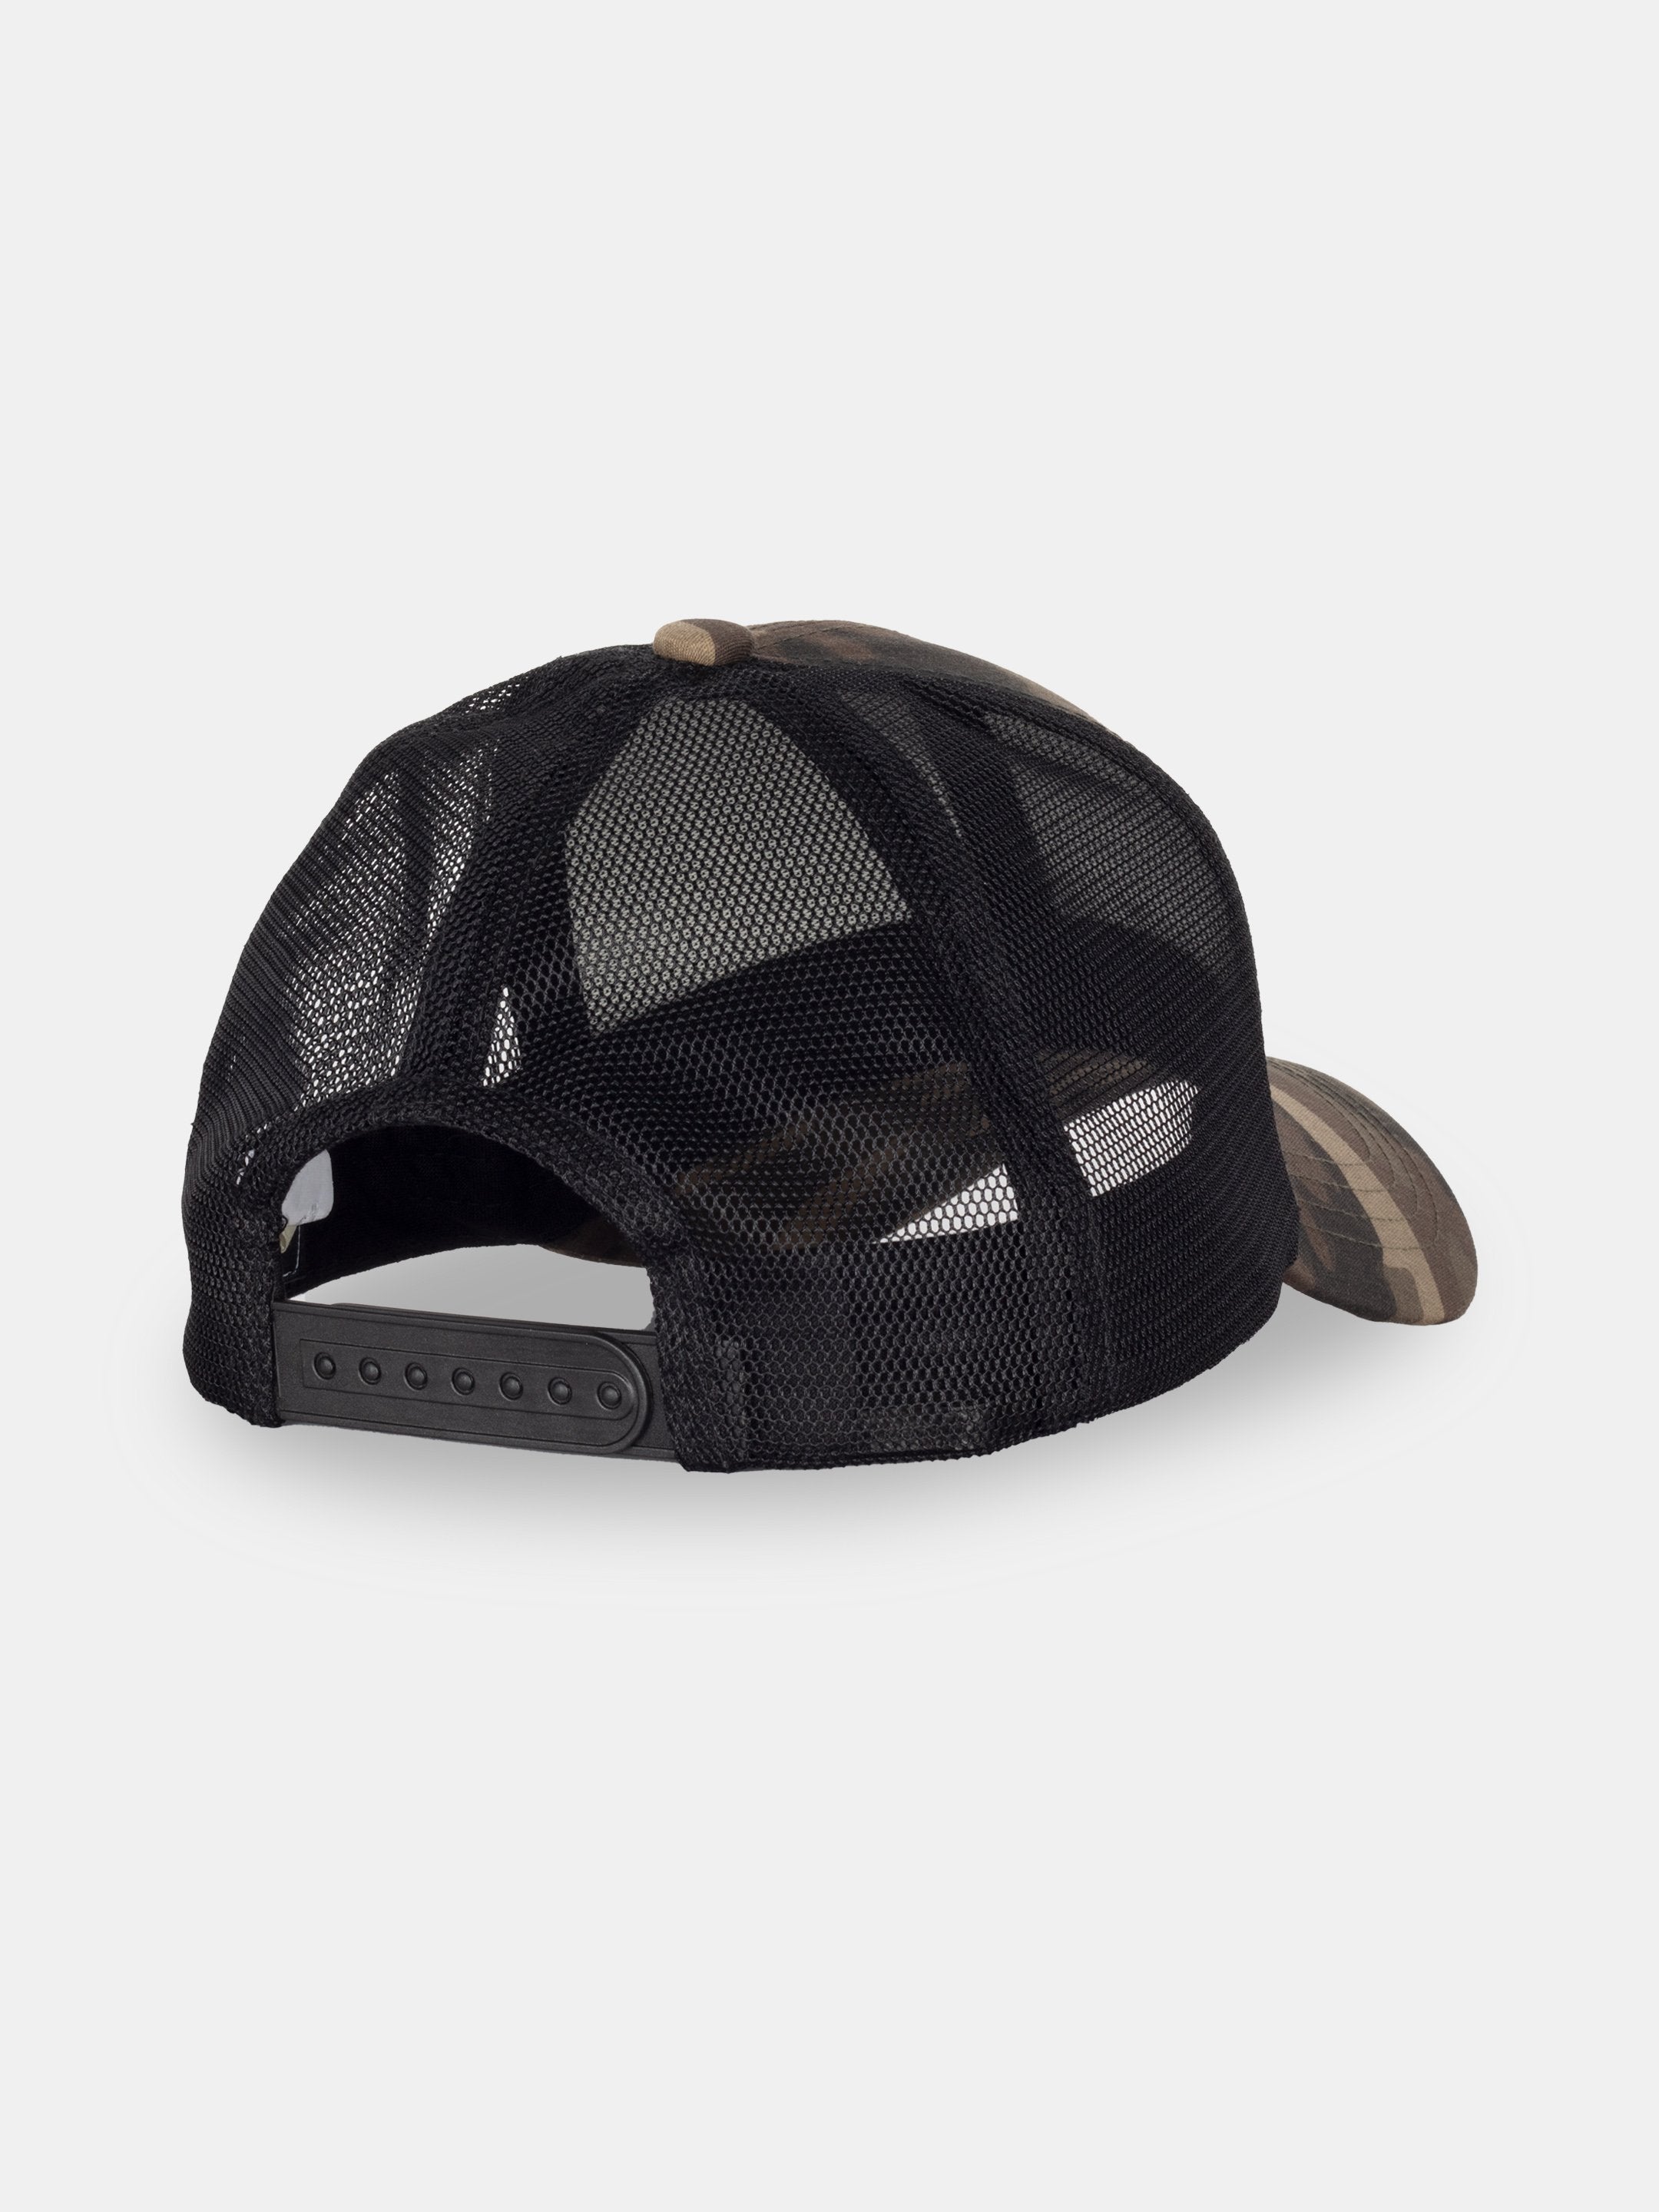 stylish caps